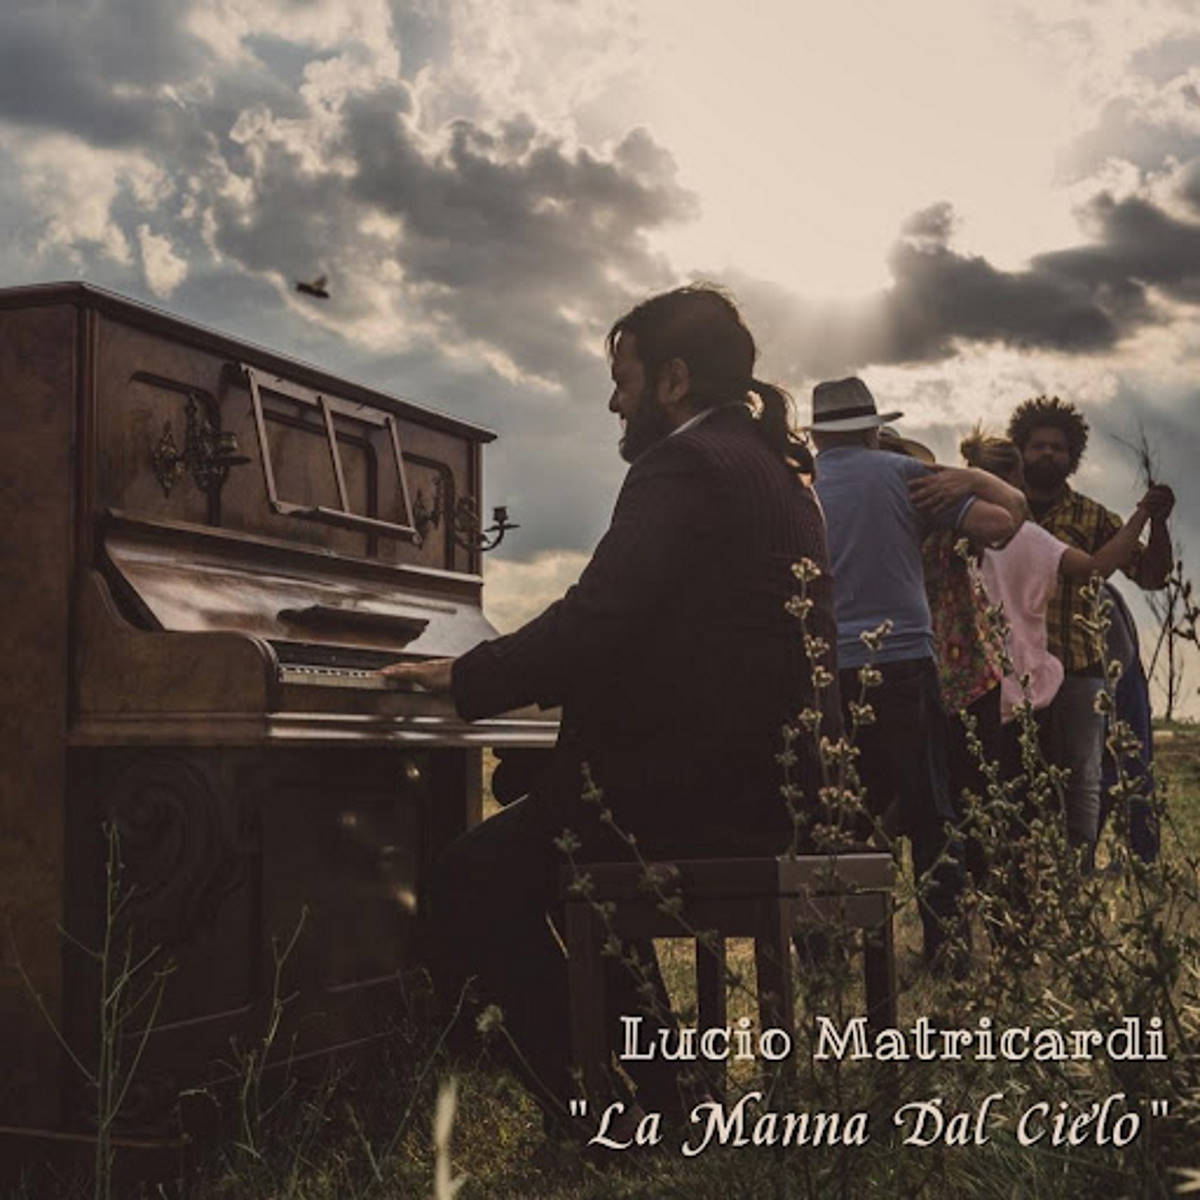 LUCIO MATRICARDI, “La manna dal cielo” è il singolo del cantautore marchigiano che porta in musica la storia della bracciante Paola Clemente